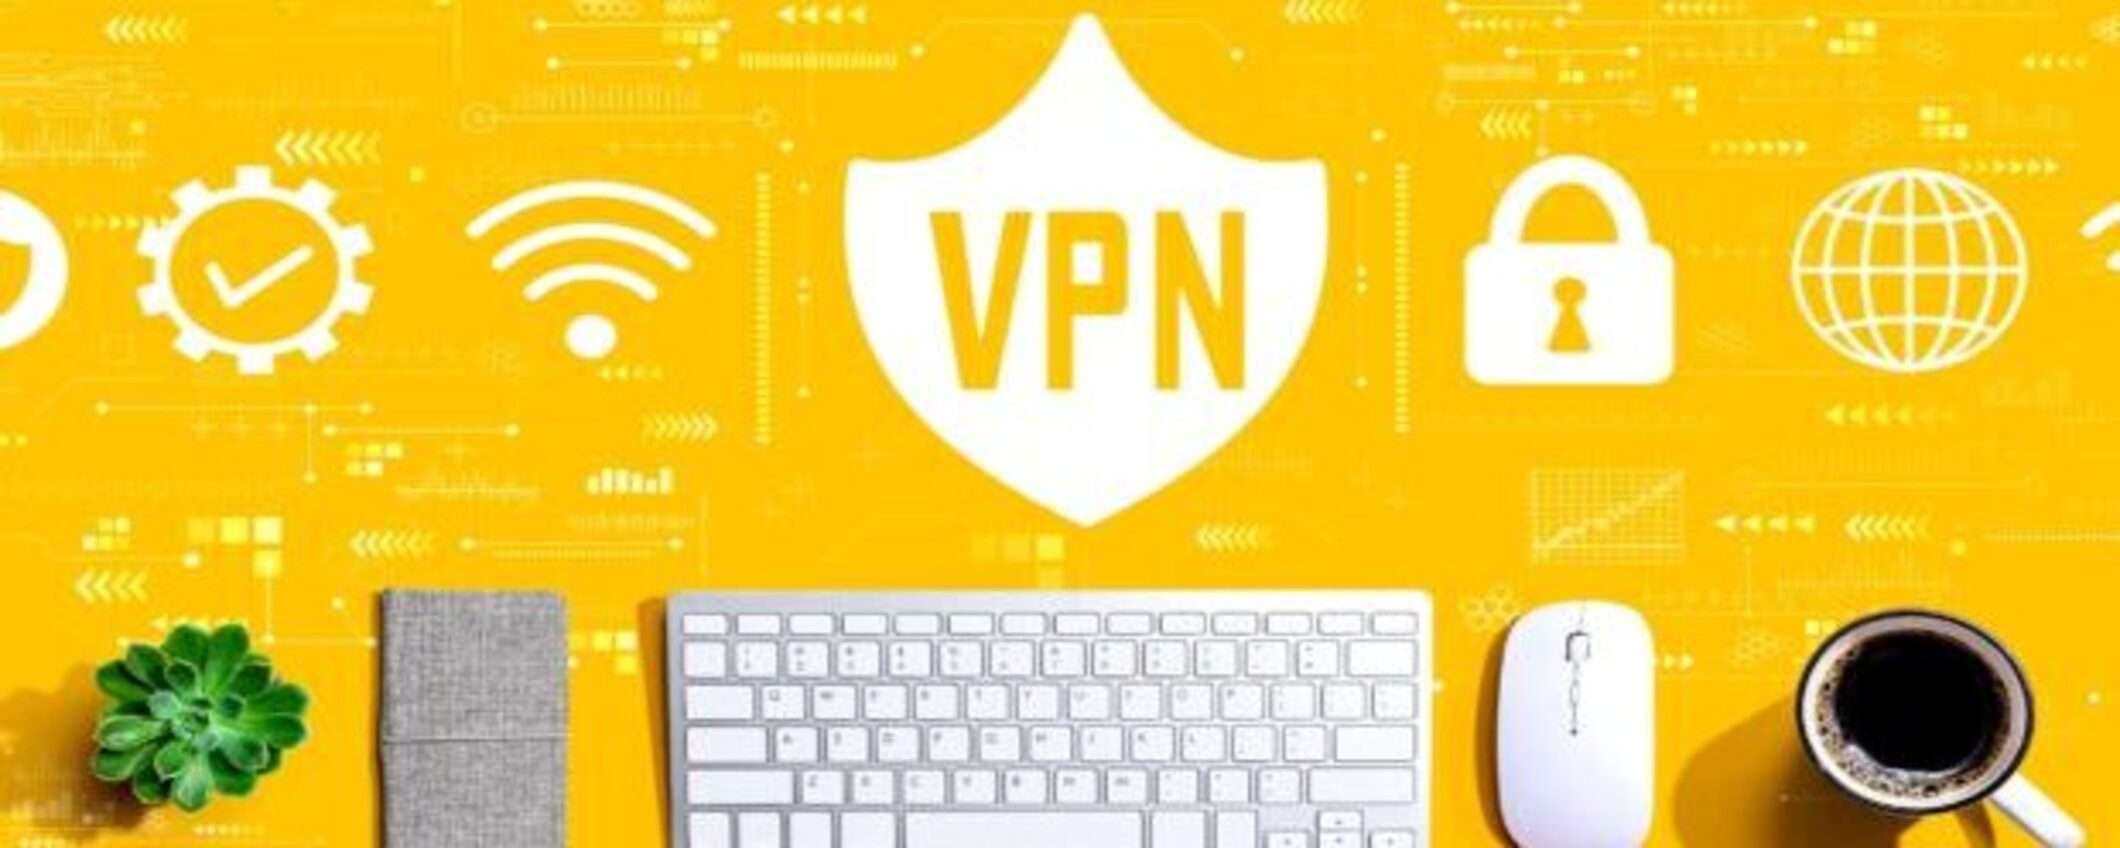 Proteggi la tua privacy online con PrivateVPN: sconto dell’85%